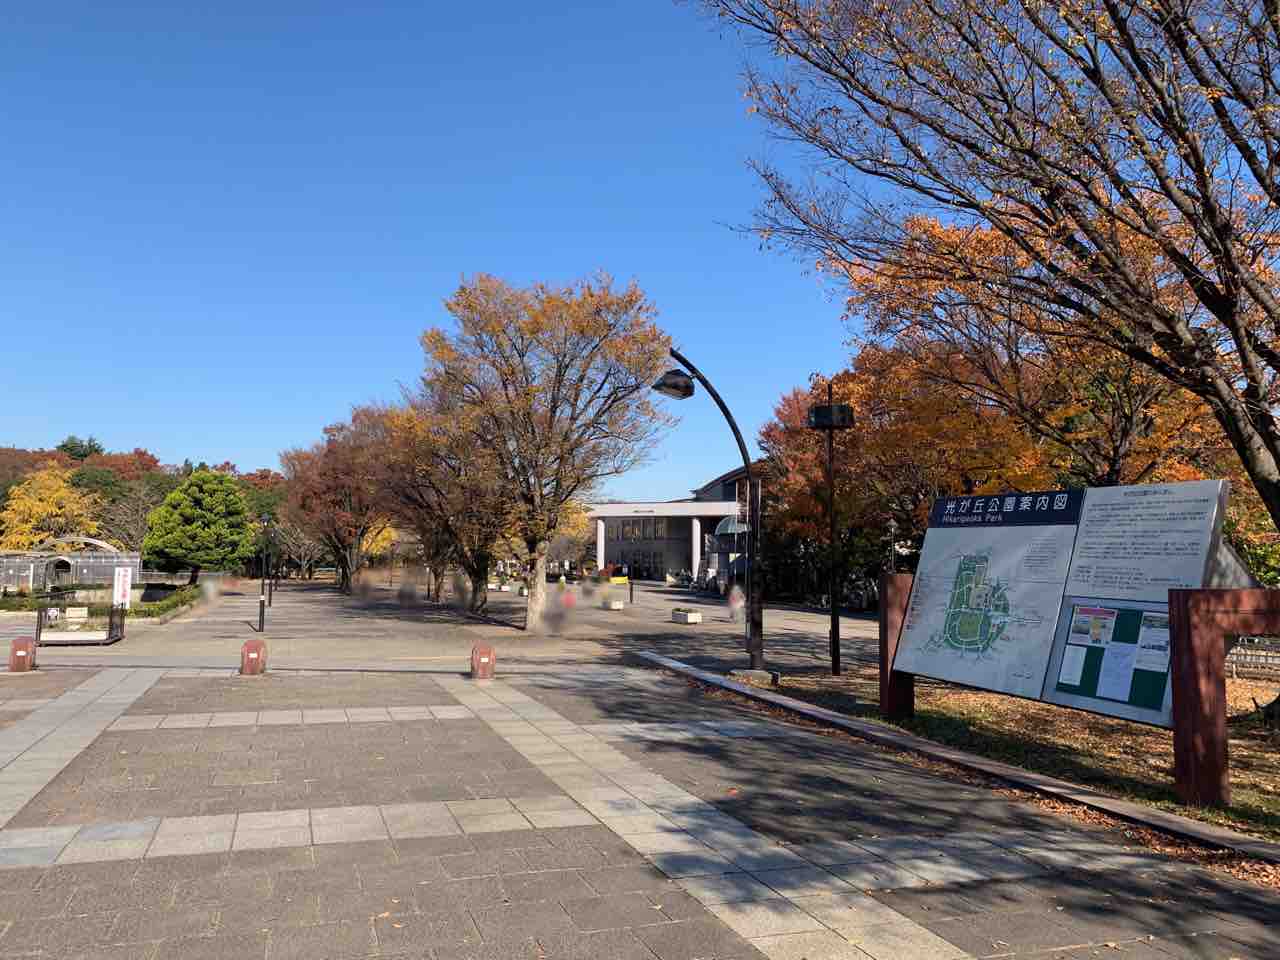 開園40周年記念 当時を振り返って懐かしもう 都立光が丘公園 で ひかり みっけ 開催 12月4日 26日 ねりまく通信 東京都練馬区の地域情報サイト